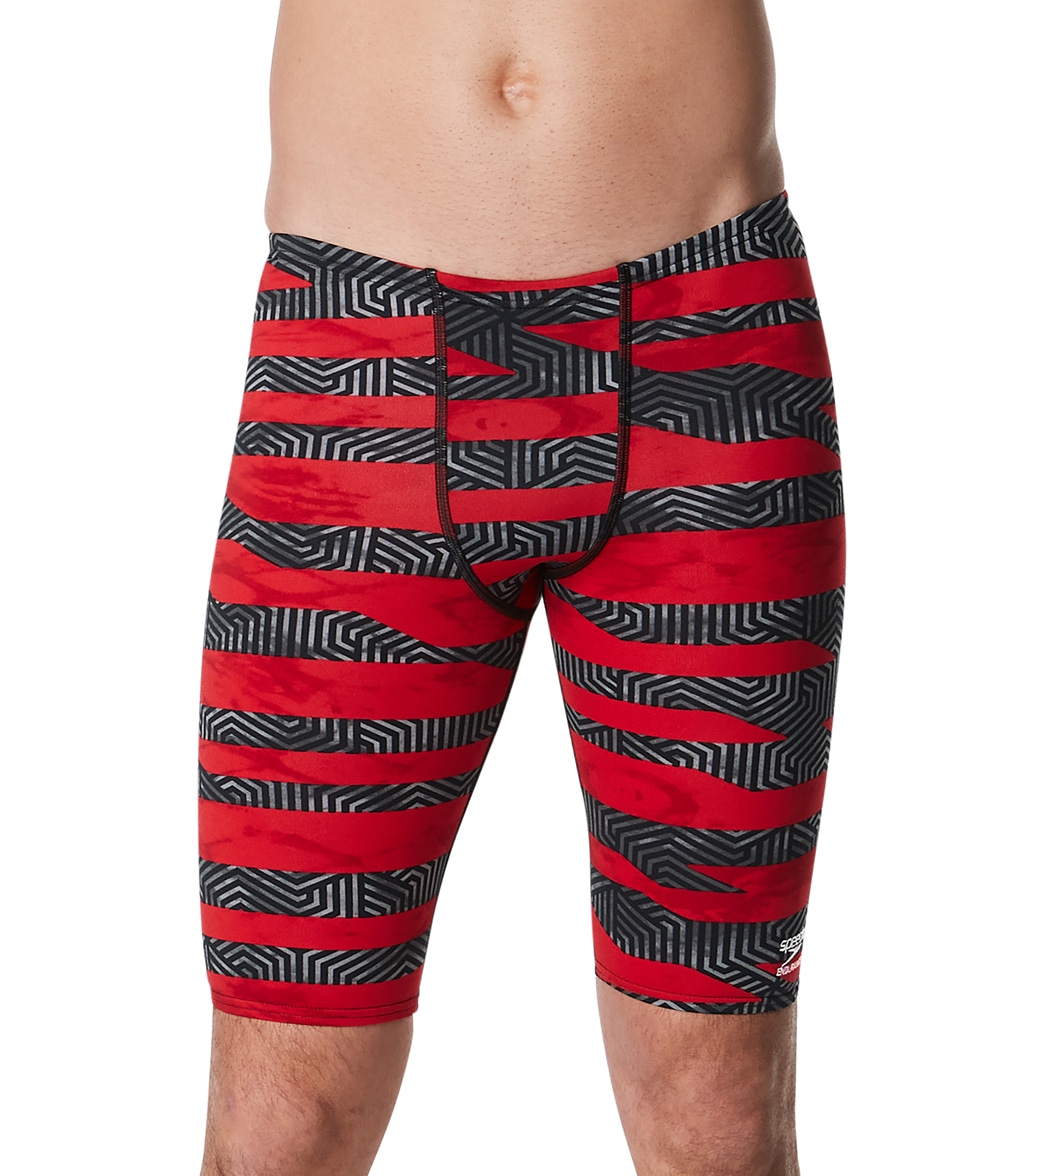 Speedo Men's Contort Stripes Jammer Swimsuit - Red 24 - Swimoutlet.com